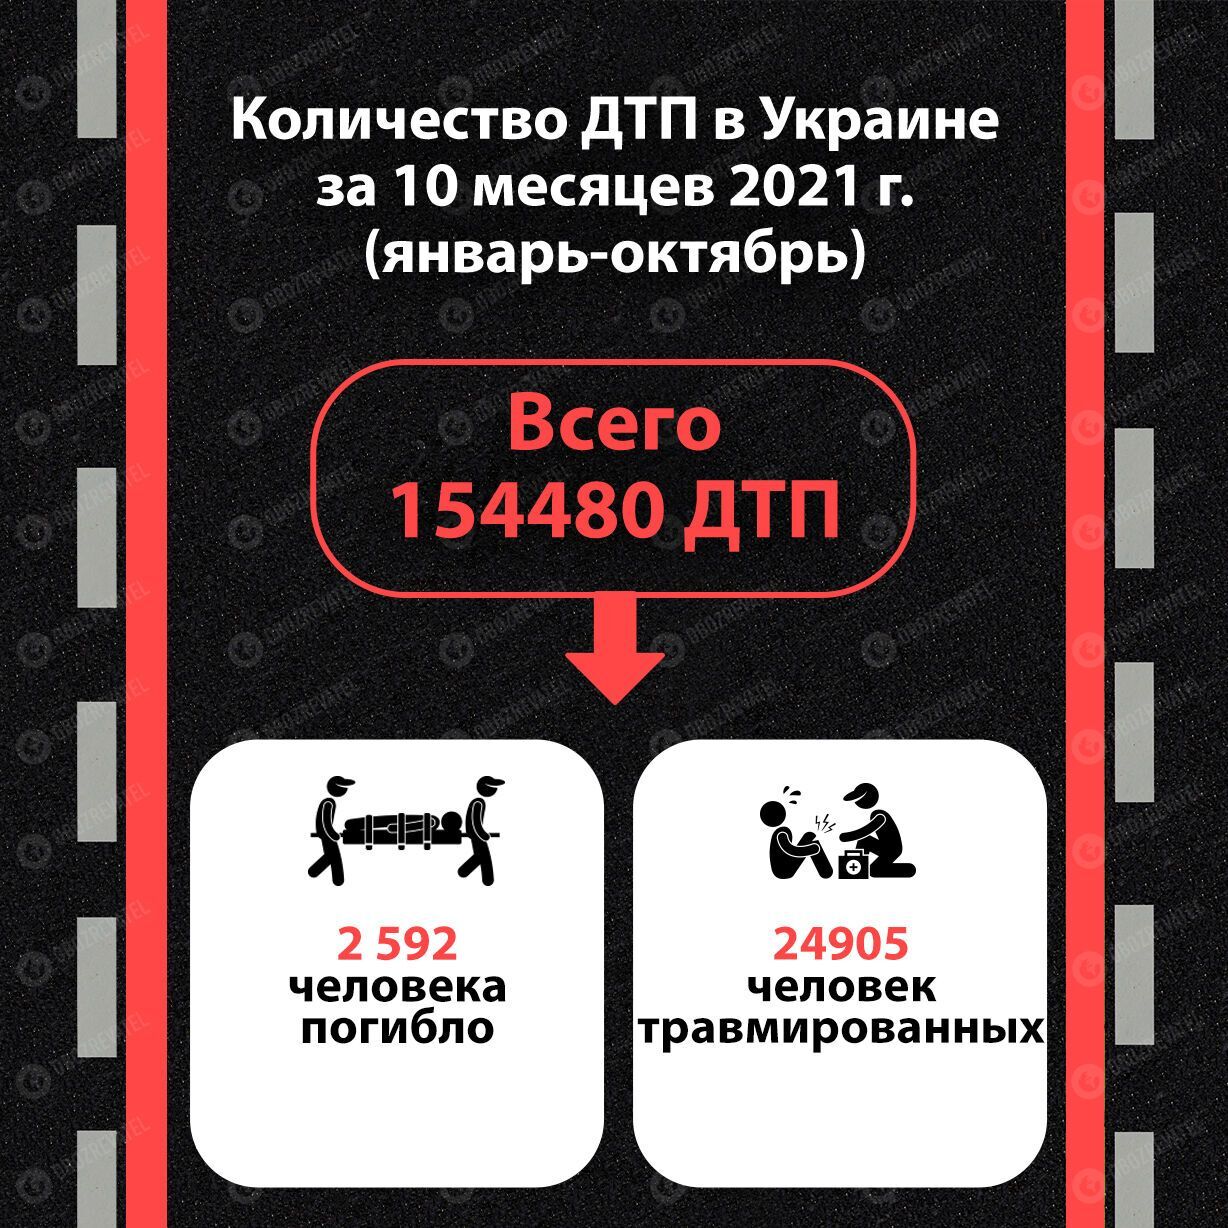 Количество ДТП в Украине за 10 месяцев